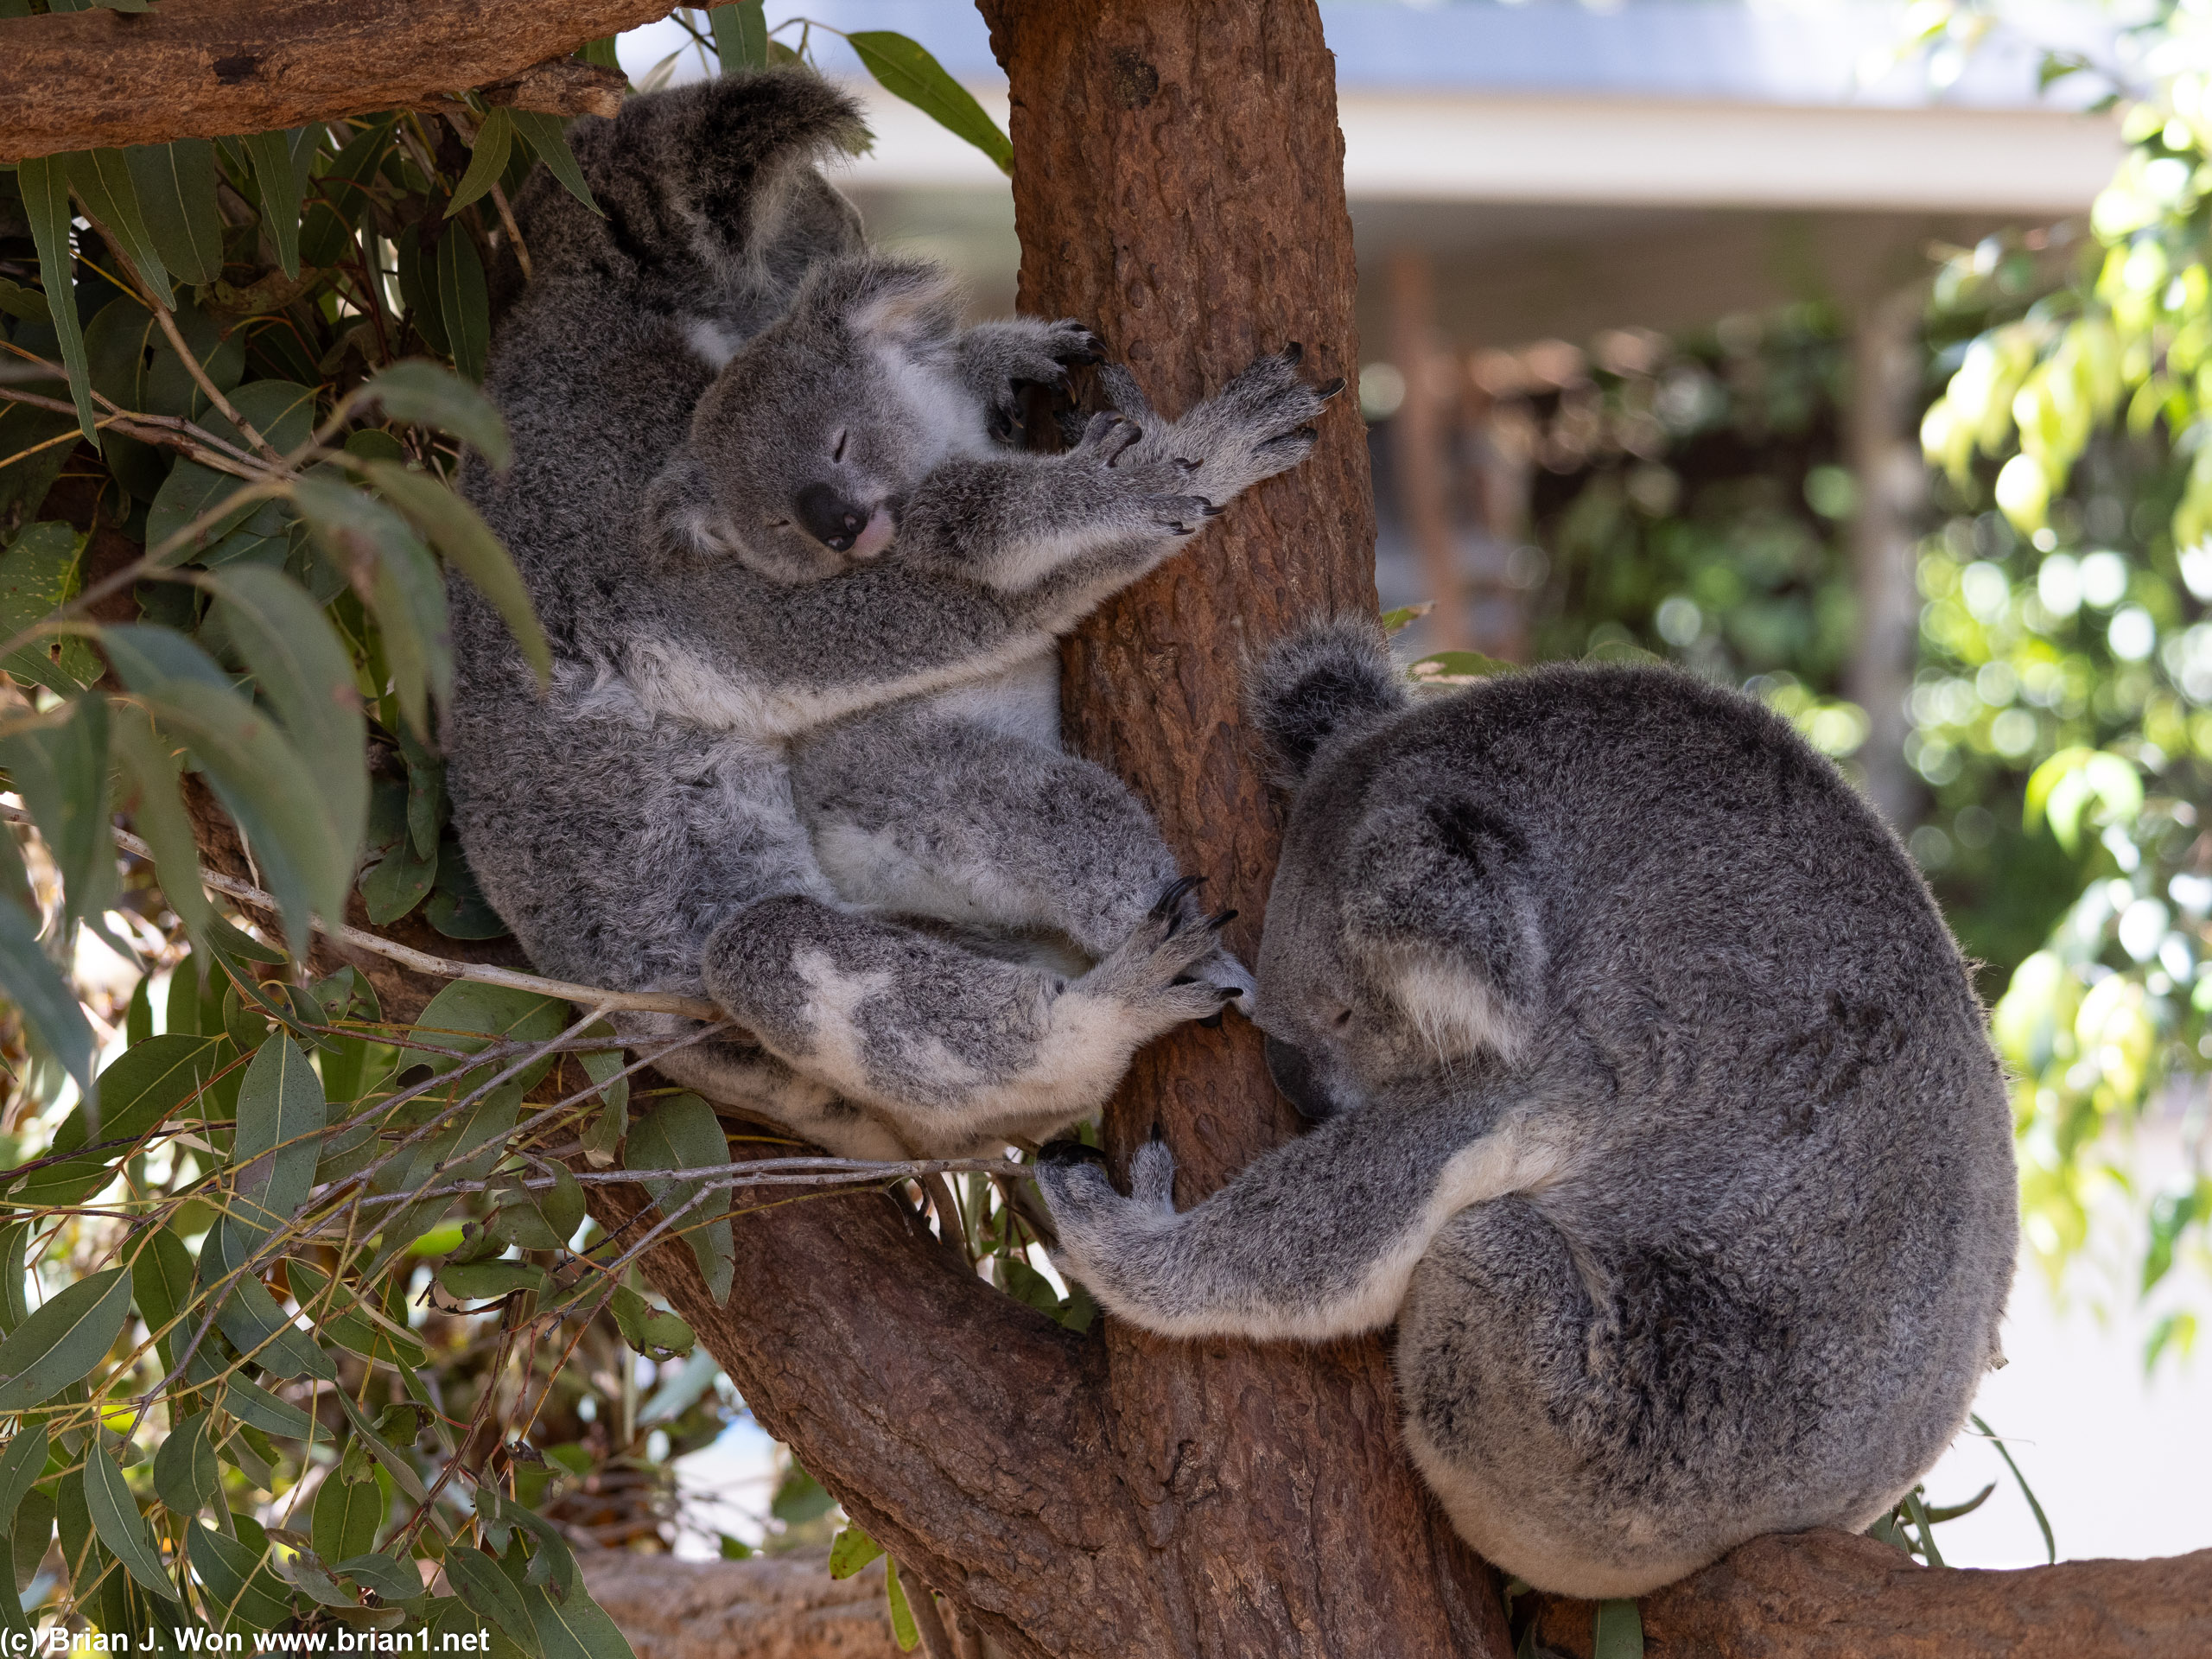 From kangaroos to koalas.